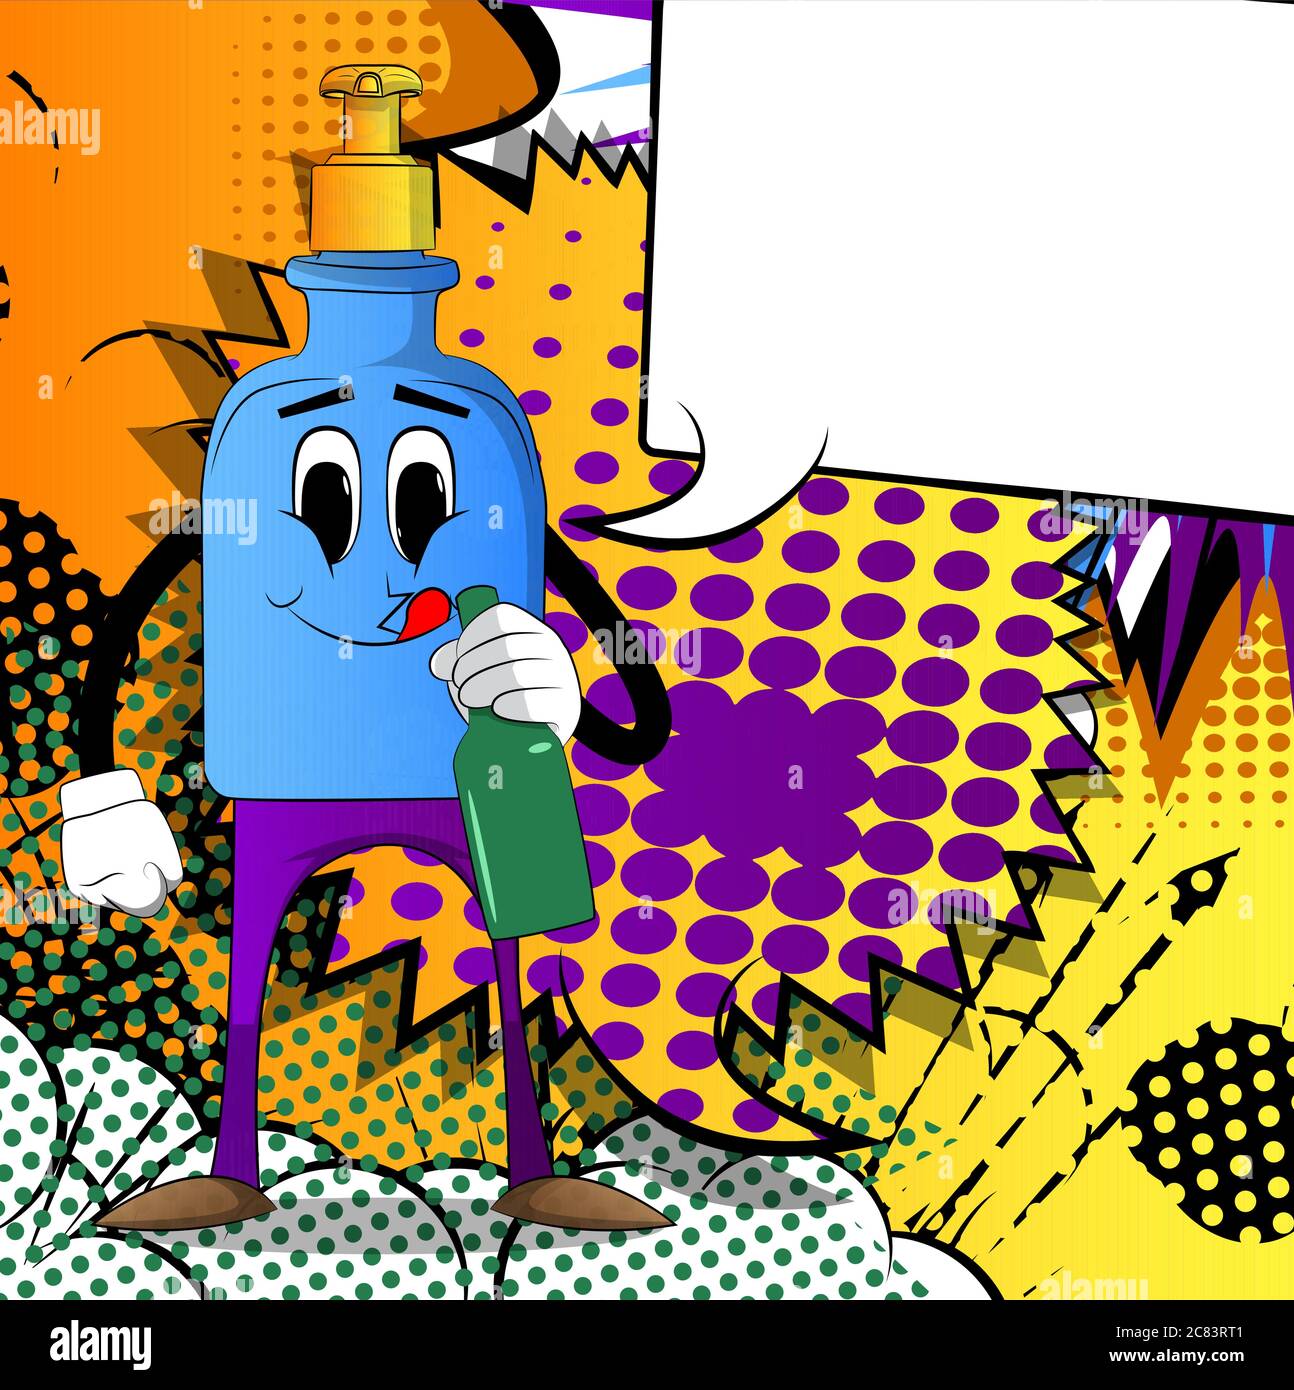 Flasche Handdesinfektionsgel mit Gesicht, das eine Flasche hält. Flüssigseife für Hygiene, Virenschutz. Vektorgrafik Cartoon-Illustration. Stock Vektor